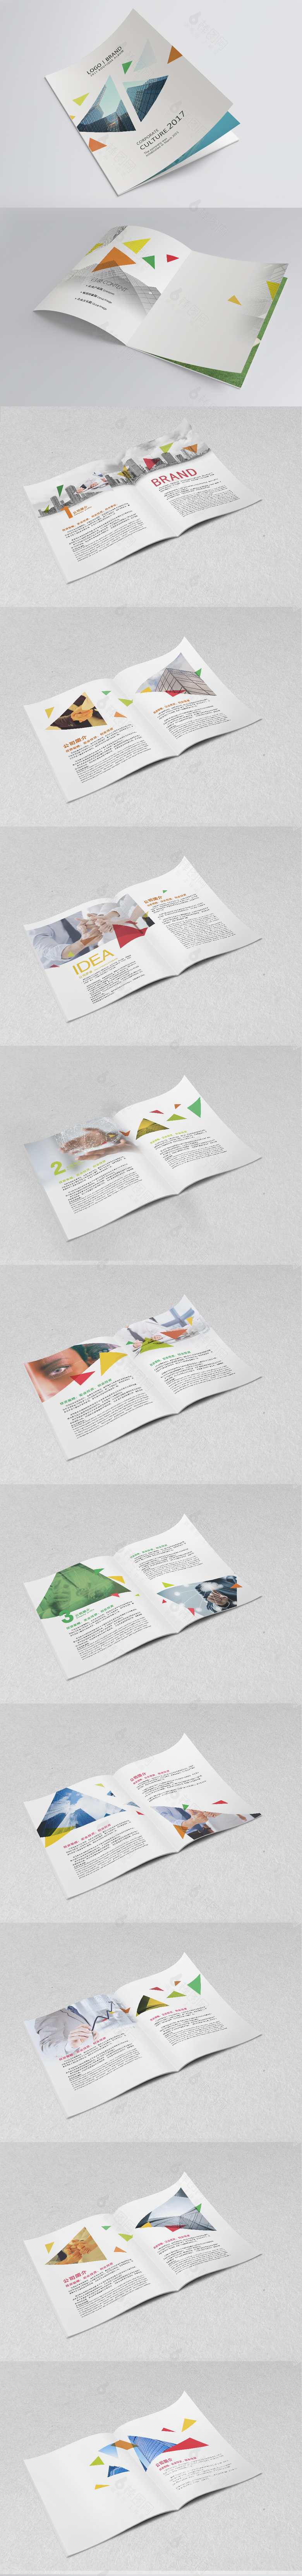 创意企业画册宣传设计